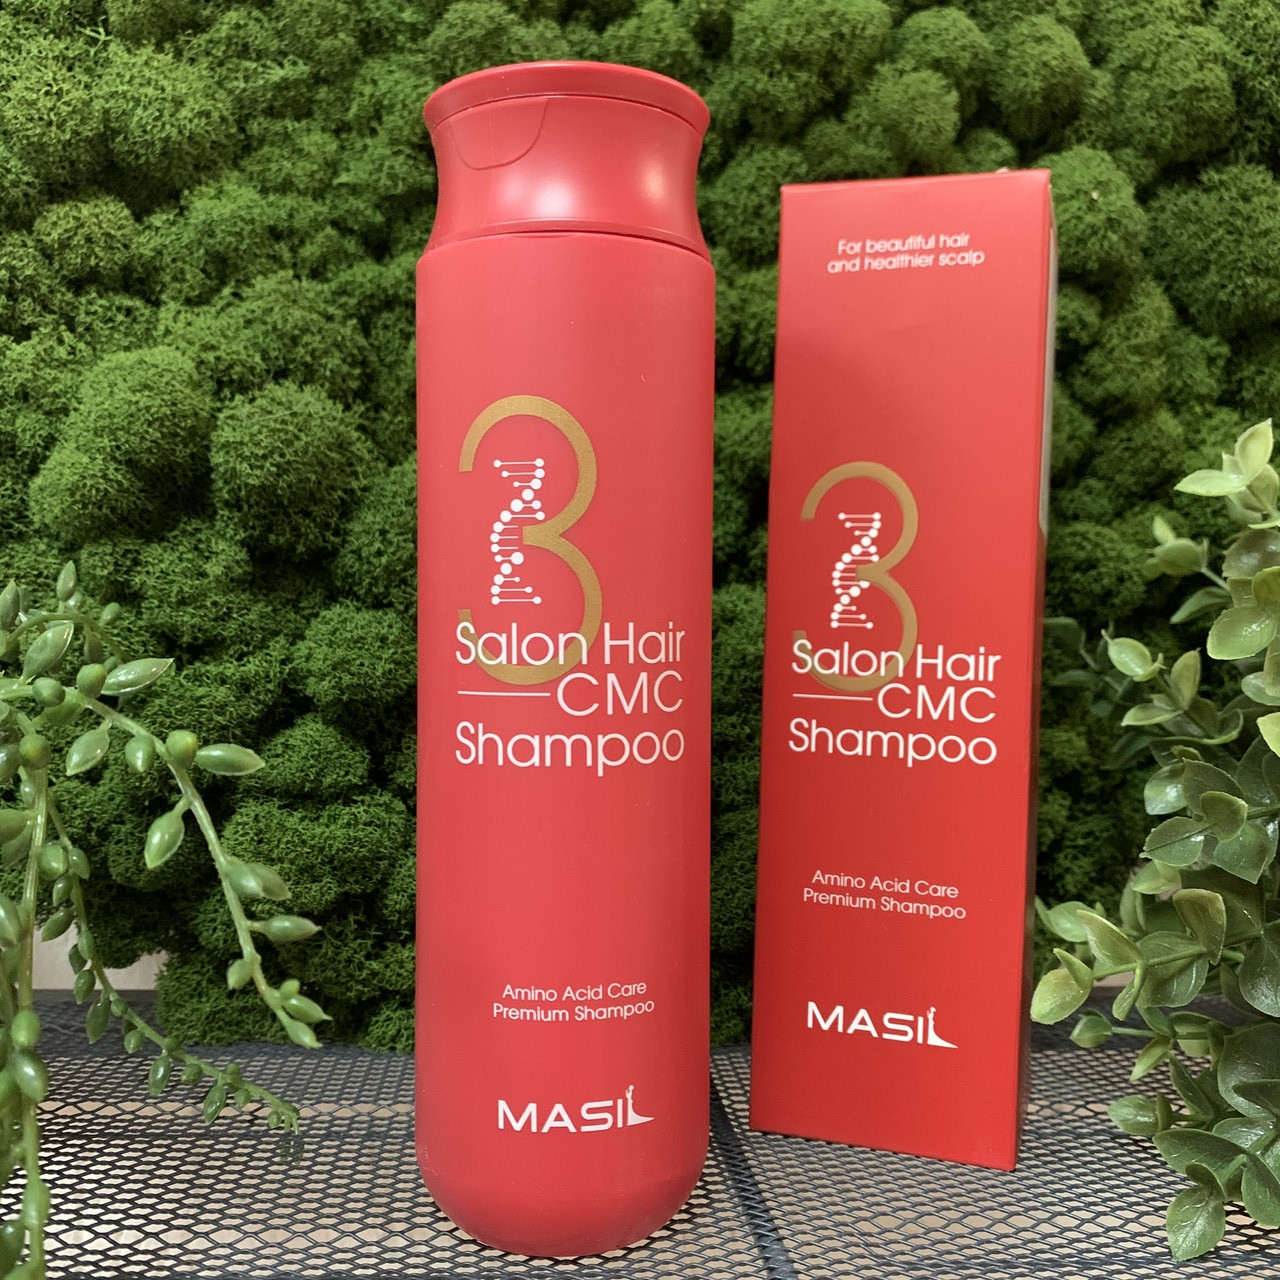 Восстанавливающий профессиональный шампунь с керамидами Masil 3 Salon Hair CMC Shampoo, 300 мл